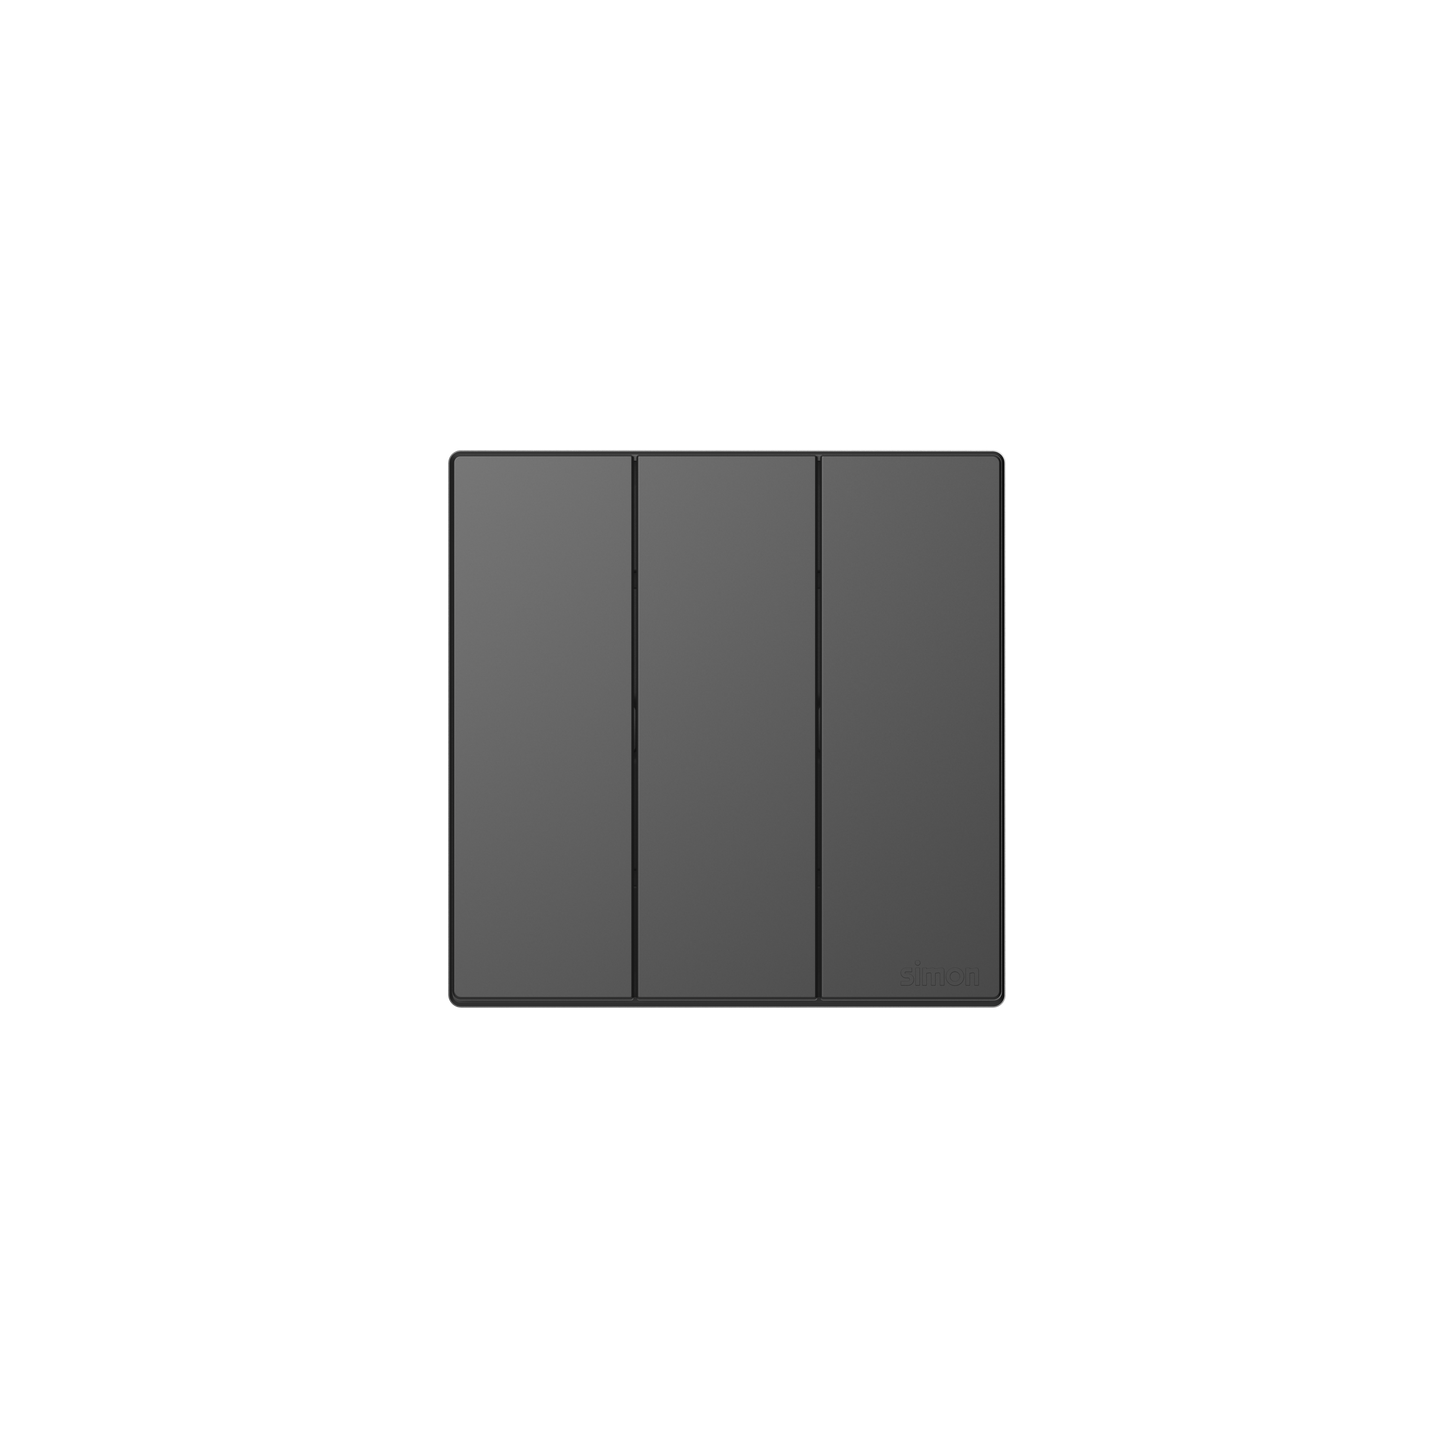 SIMON M3 Switches (Black)